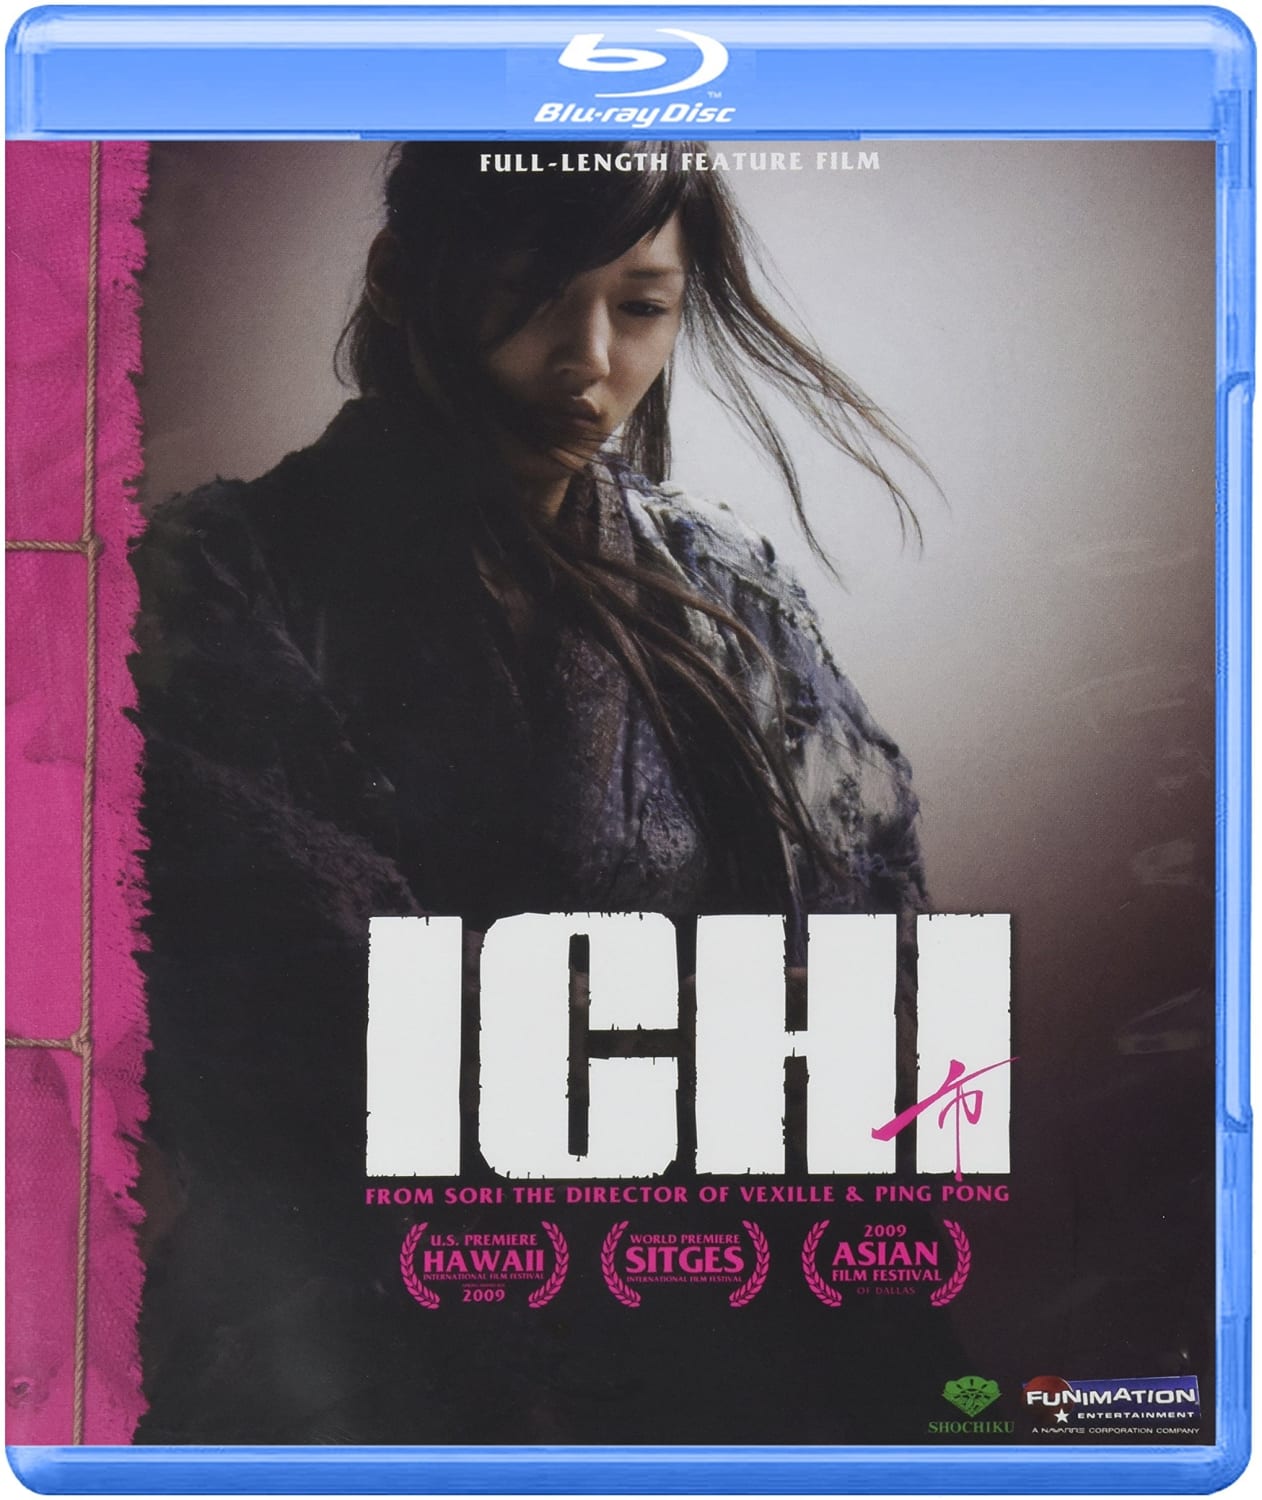 Ichi (Blu-ray) on MovieShack